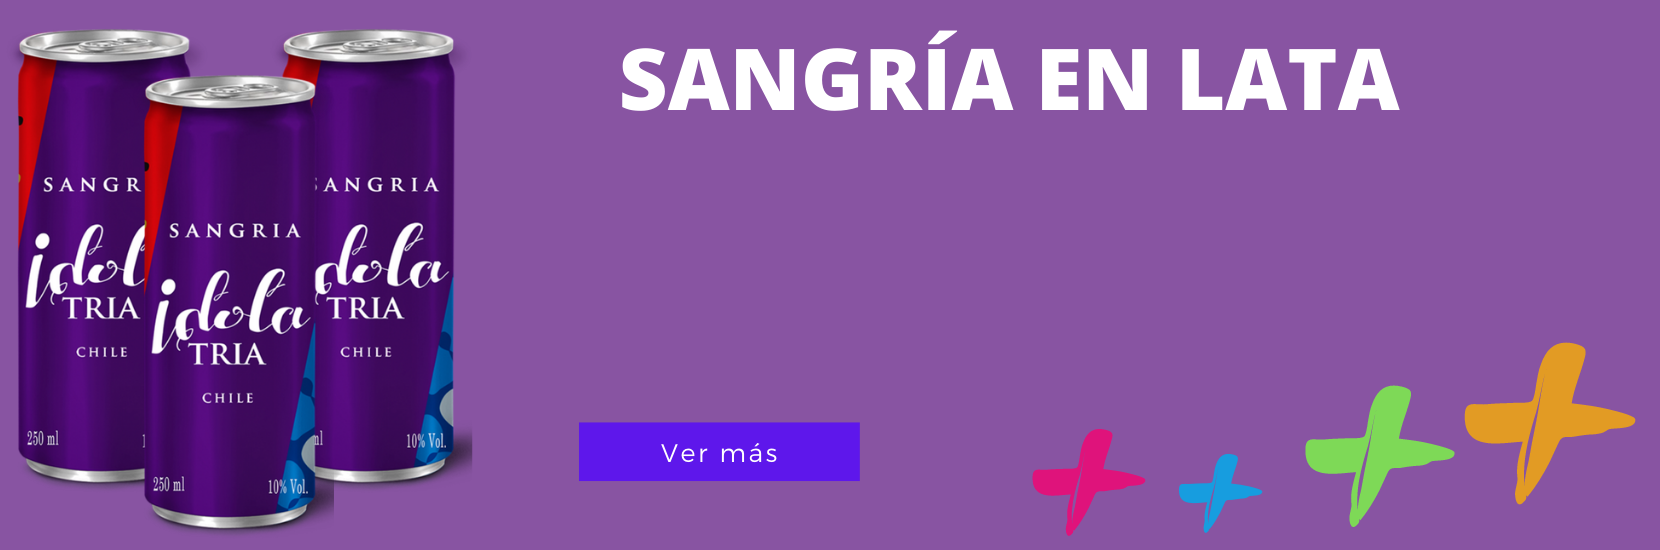 sangria_lata_mas_cepas